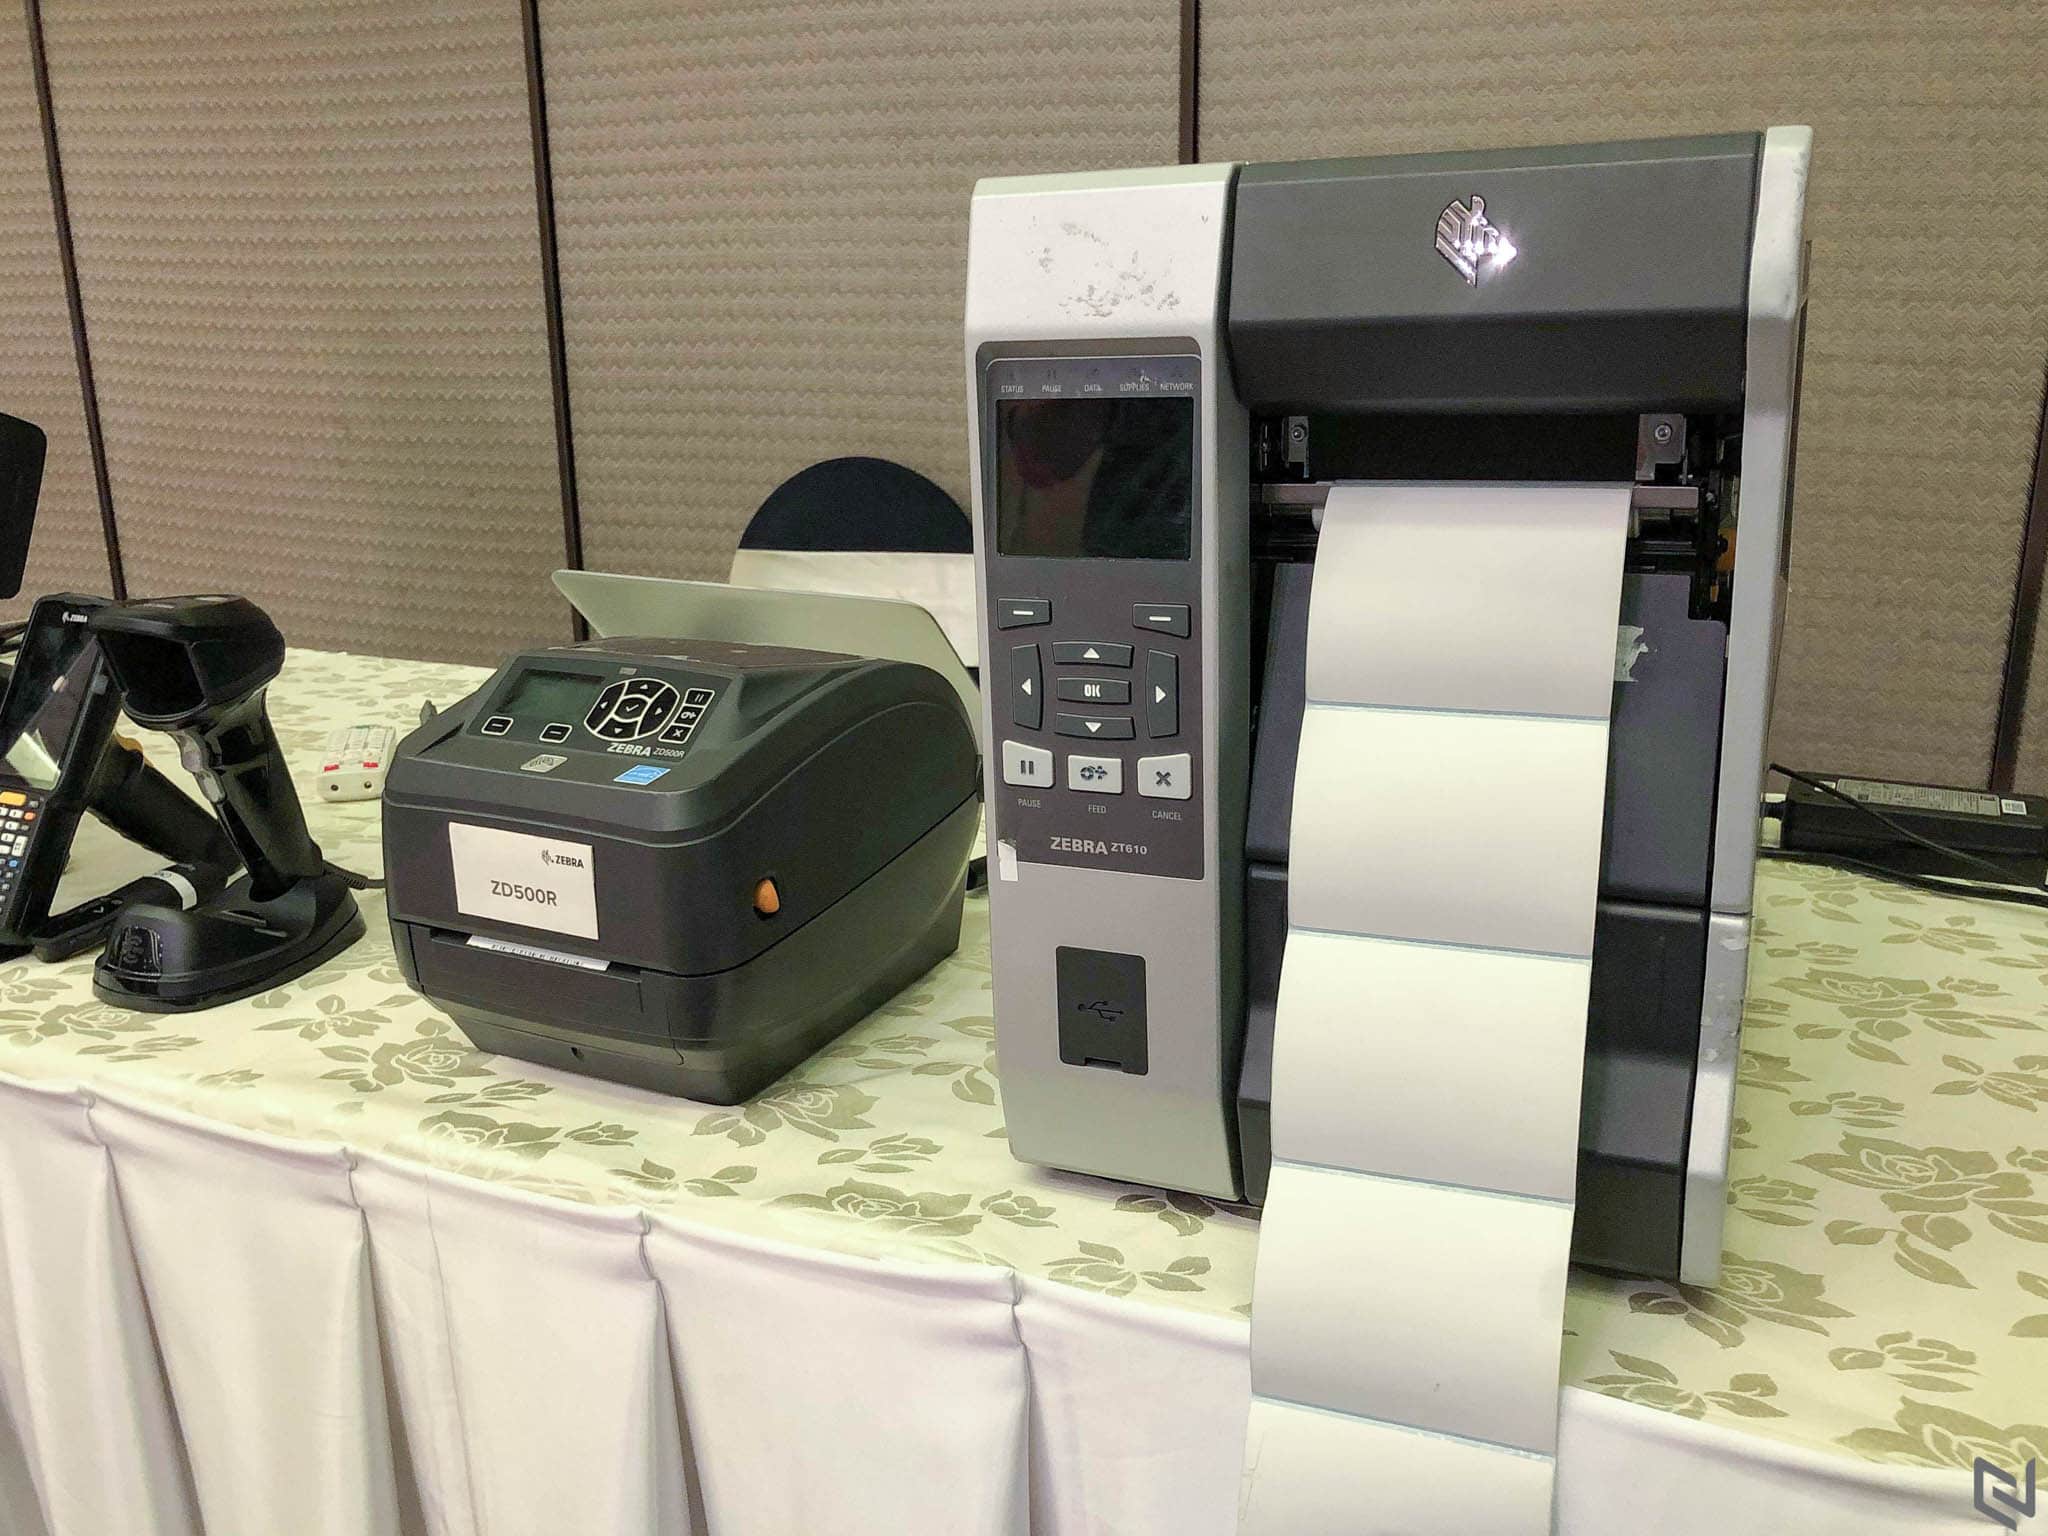 Smartcom chính thức trở thành nhà phân phối sản phẩm Zebra tại Việt Nam